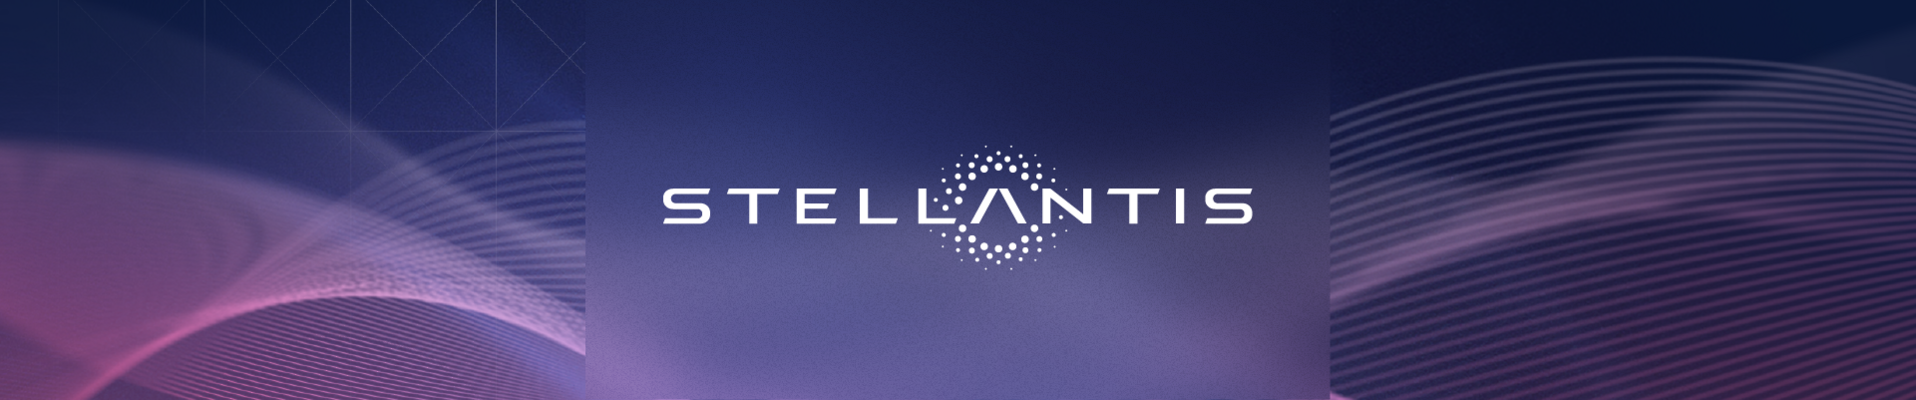 Stellantis Nederland | Next is Now Event | B2B